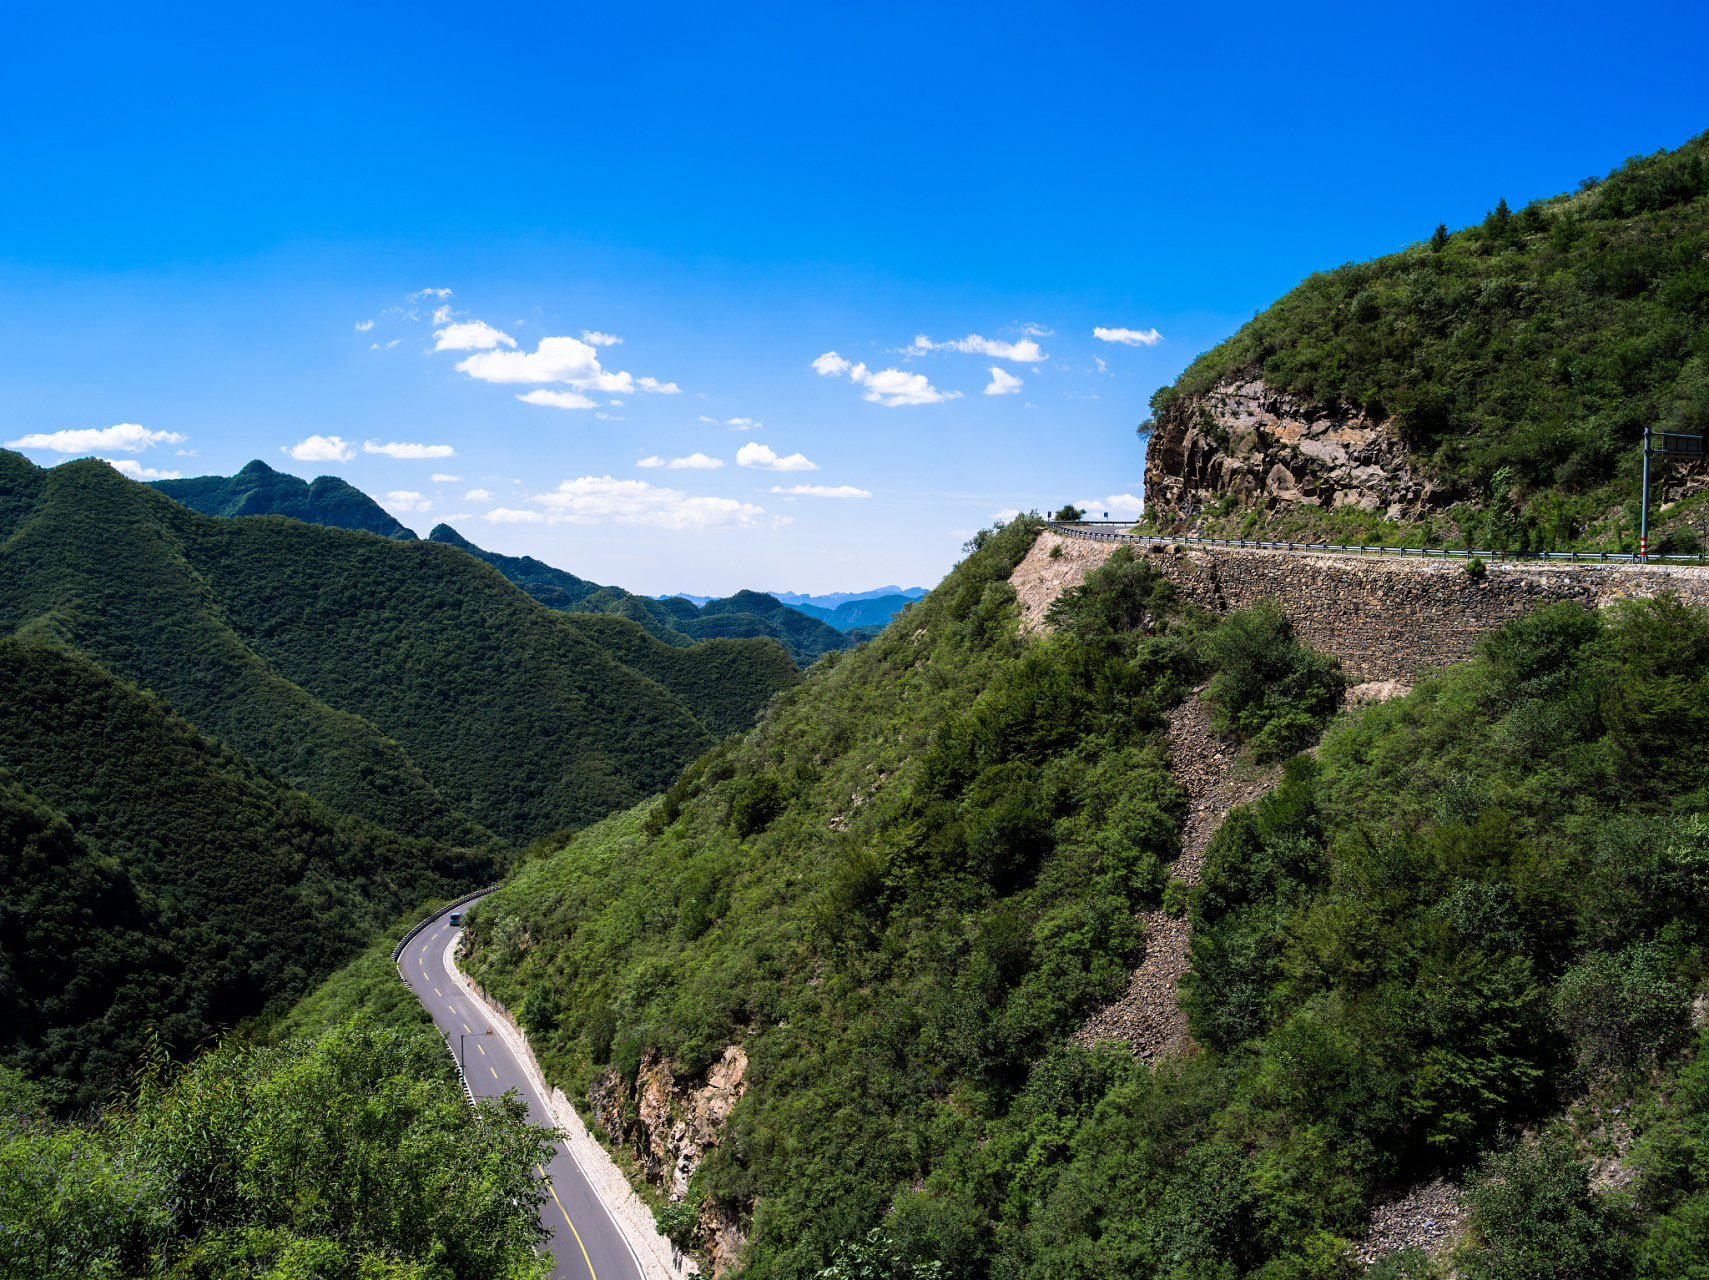 环翠峪风景名胜区位于郑州西南40公里的荥阳市境内,是国家aaa级旅游